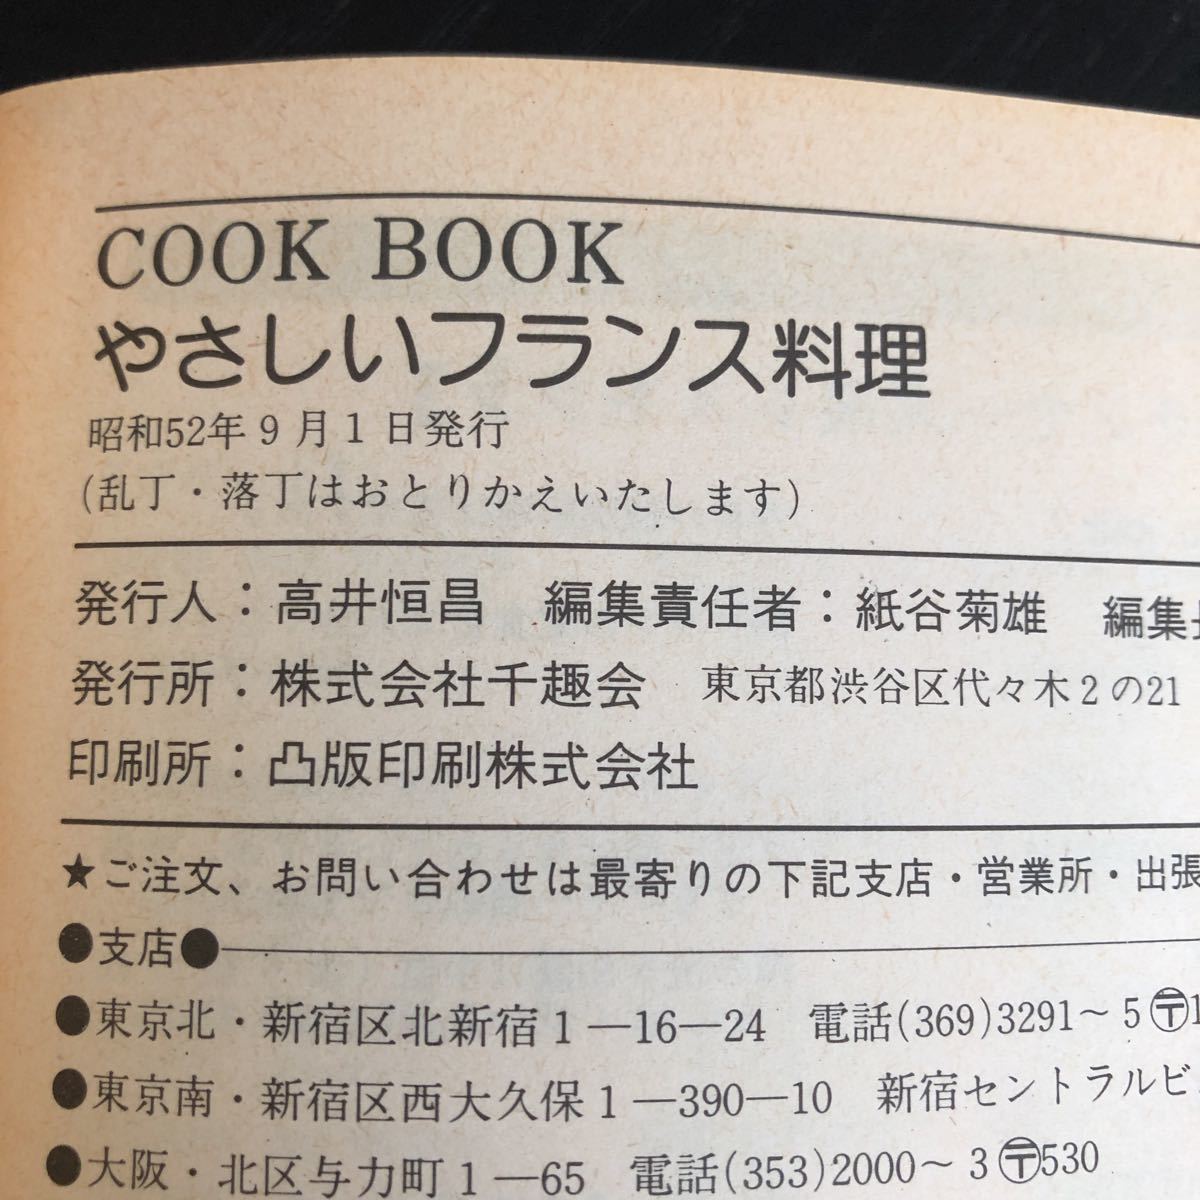 ち50 やさしいフランス料理 昭和52年9月1日発行 COOKBOOK 手作り レシピ 家庭料理 中華 おもてなし 簡単 時短 肉 栄養 献立 レトロ 卵_画像9